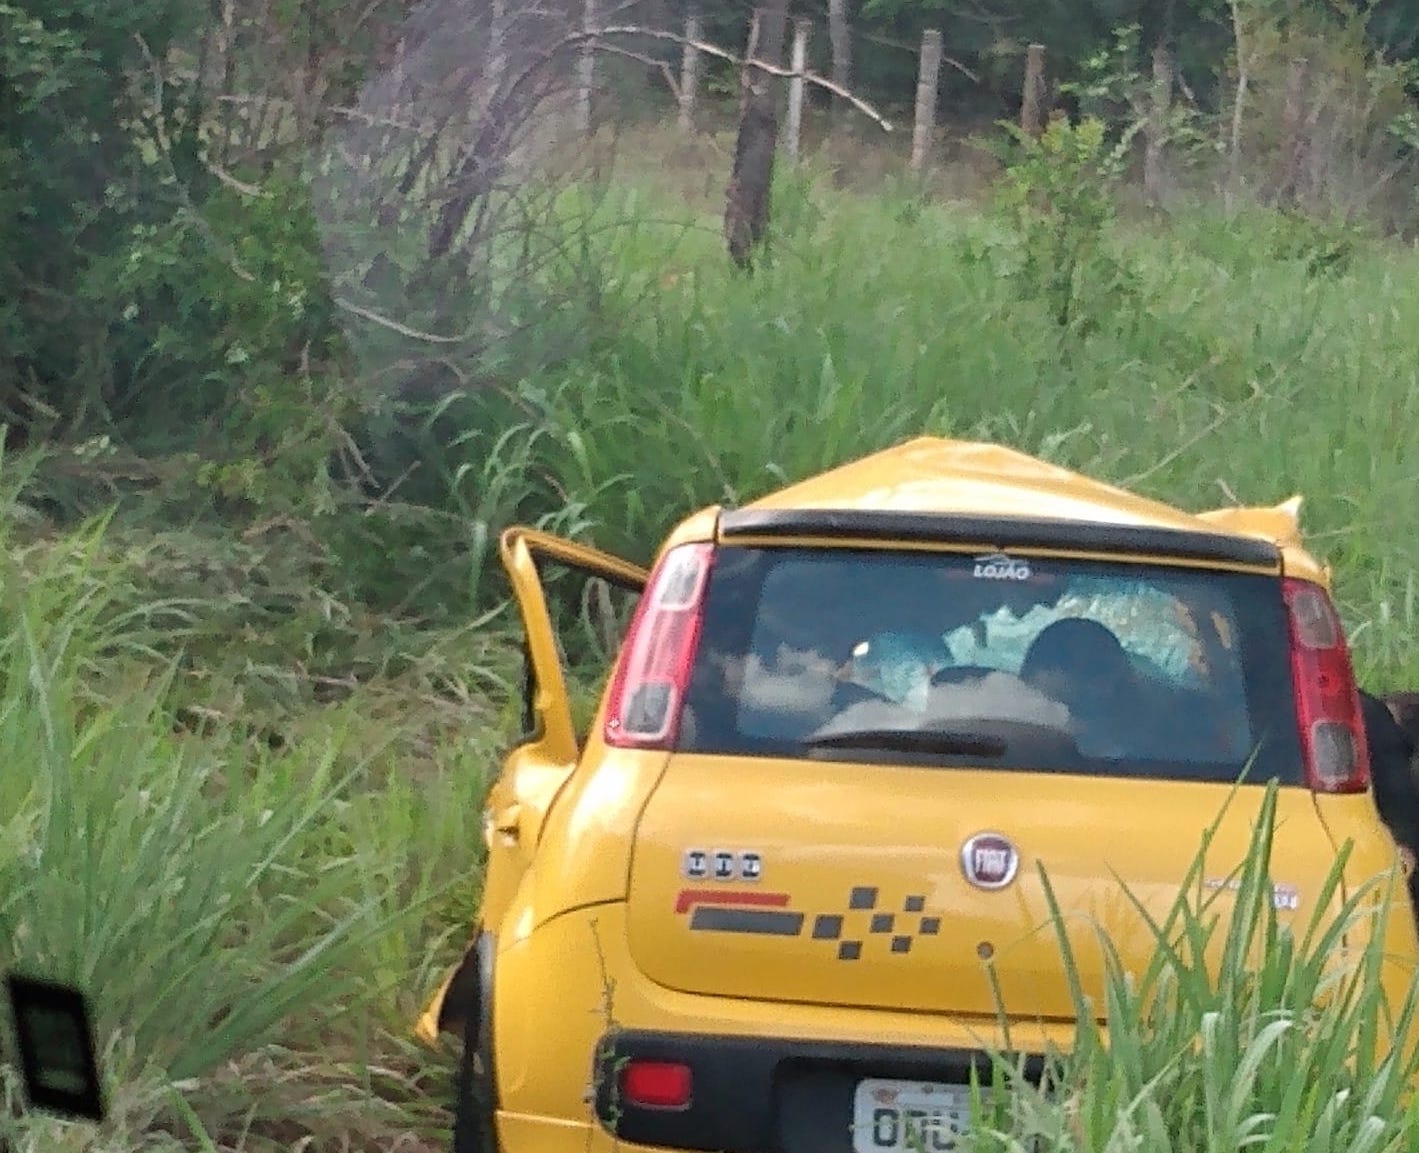 Ocupantes do Fiat Uno morreram durante acidente - Foto: Redes Sociais